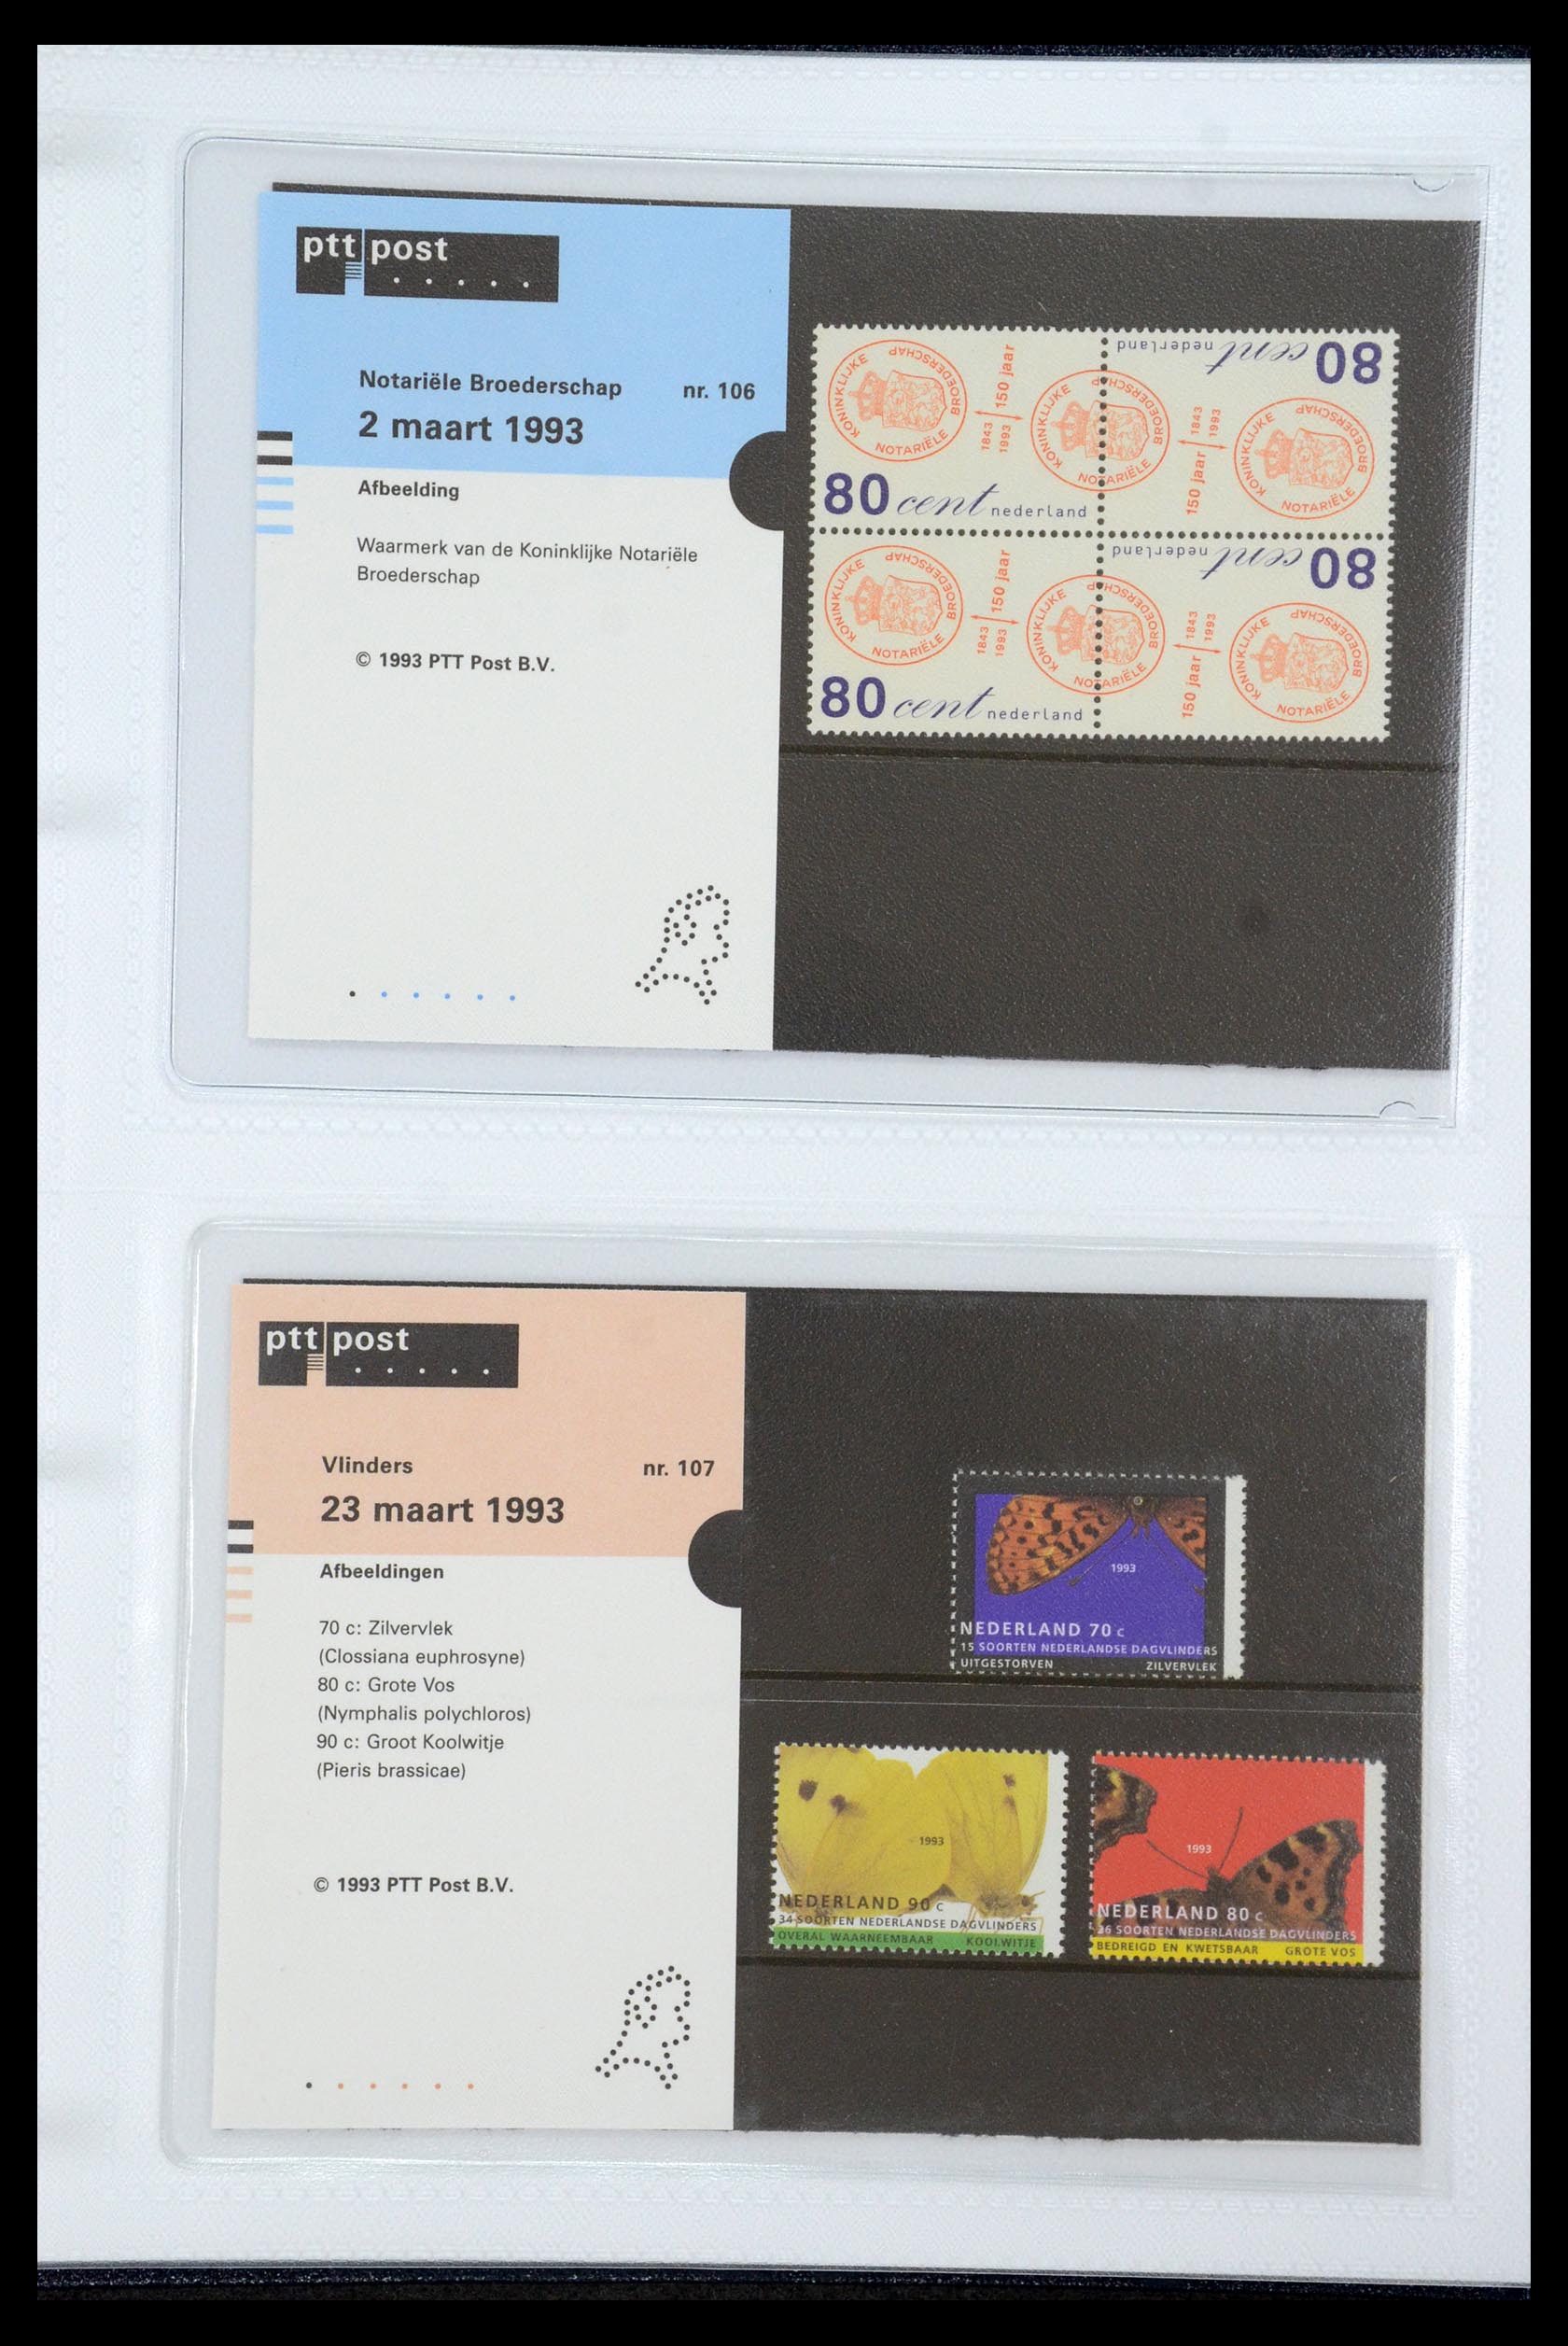 35947 055 - Stamp Collection 35947 Netherlands PTT presentation packs 1982-2019!